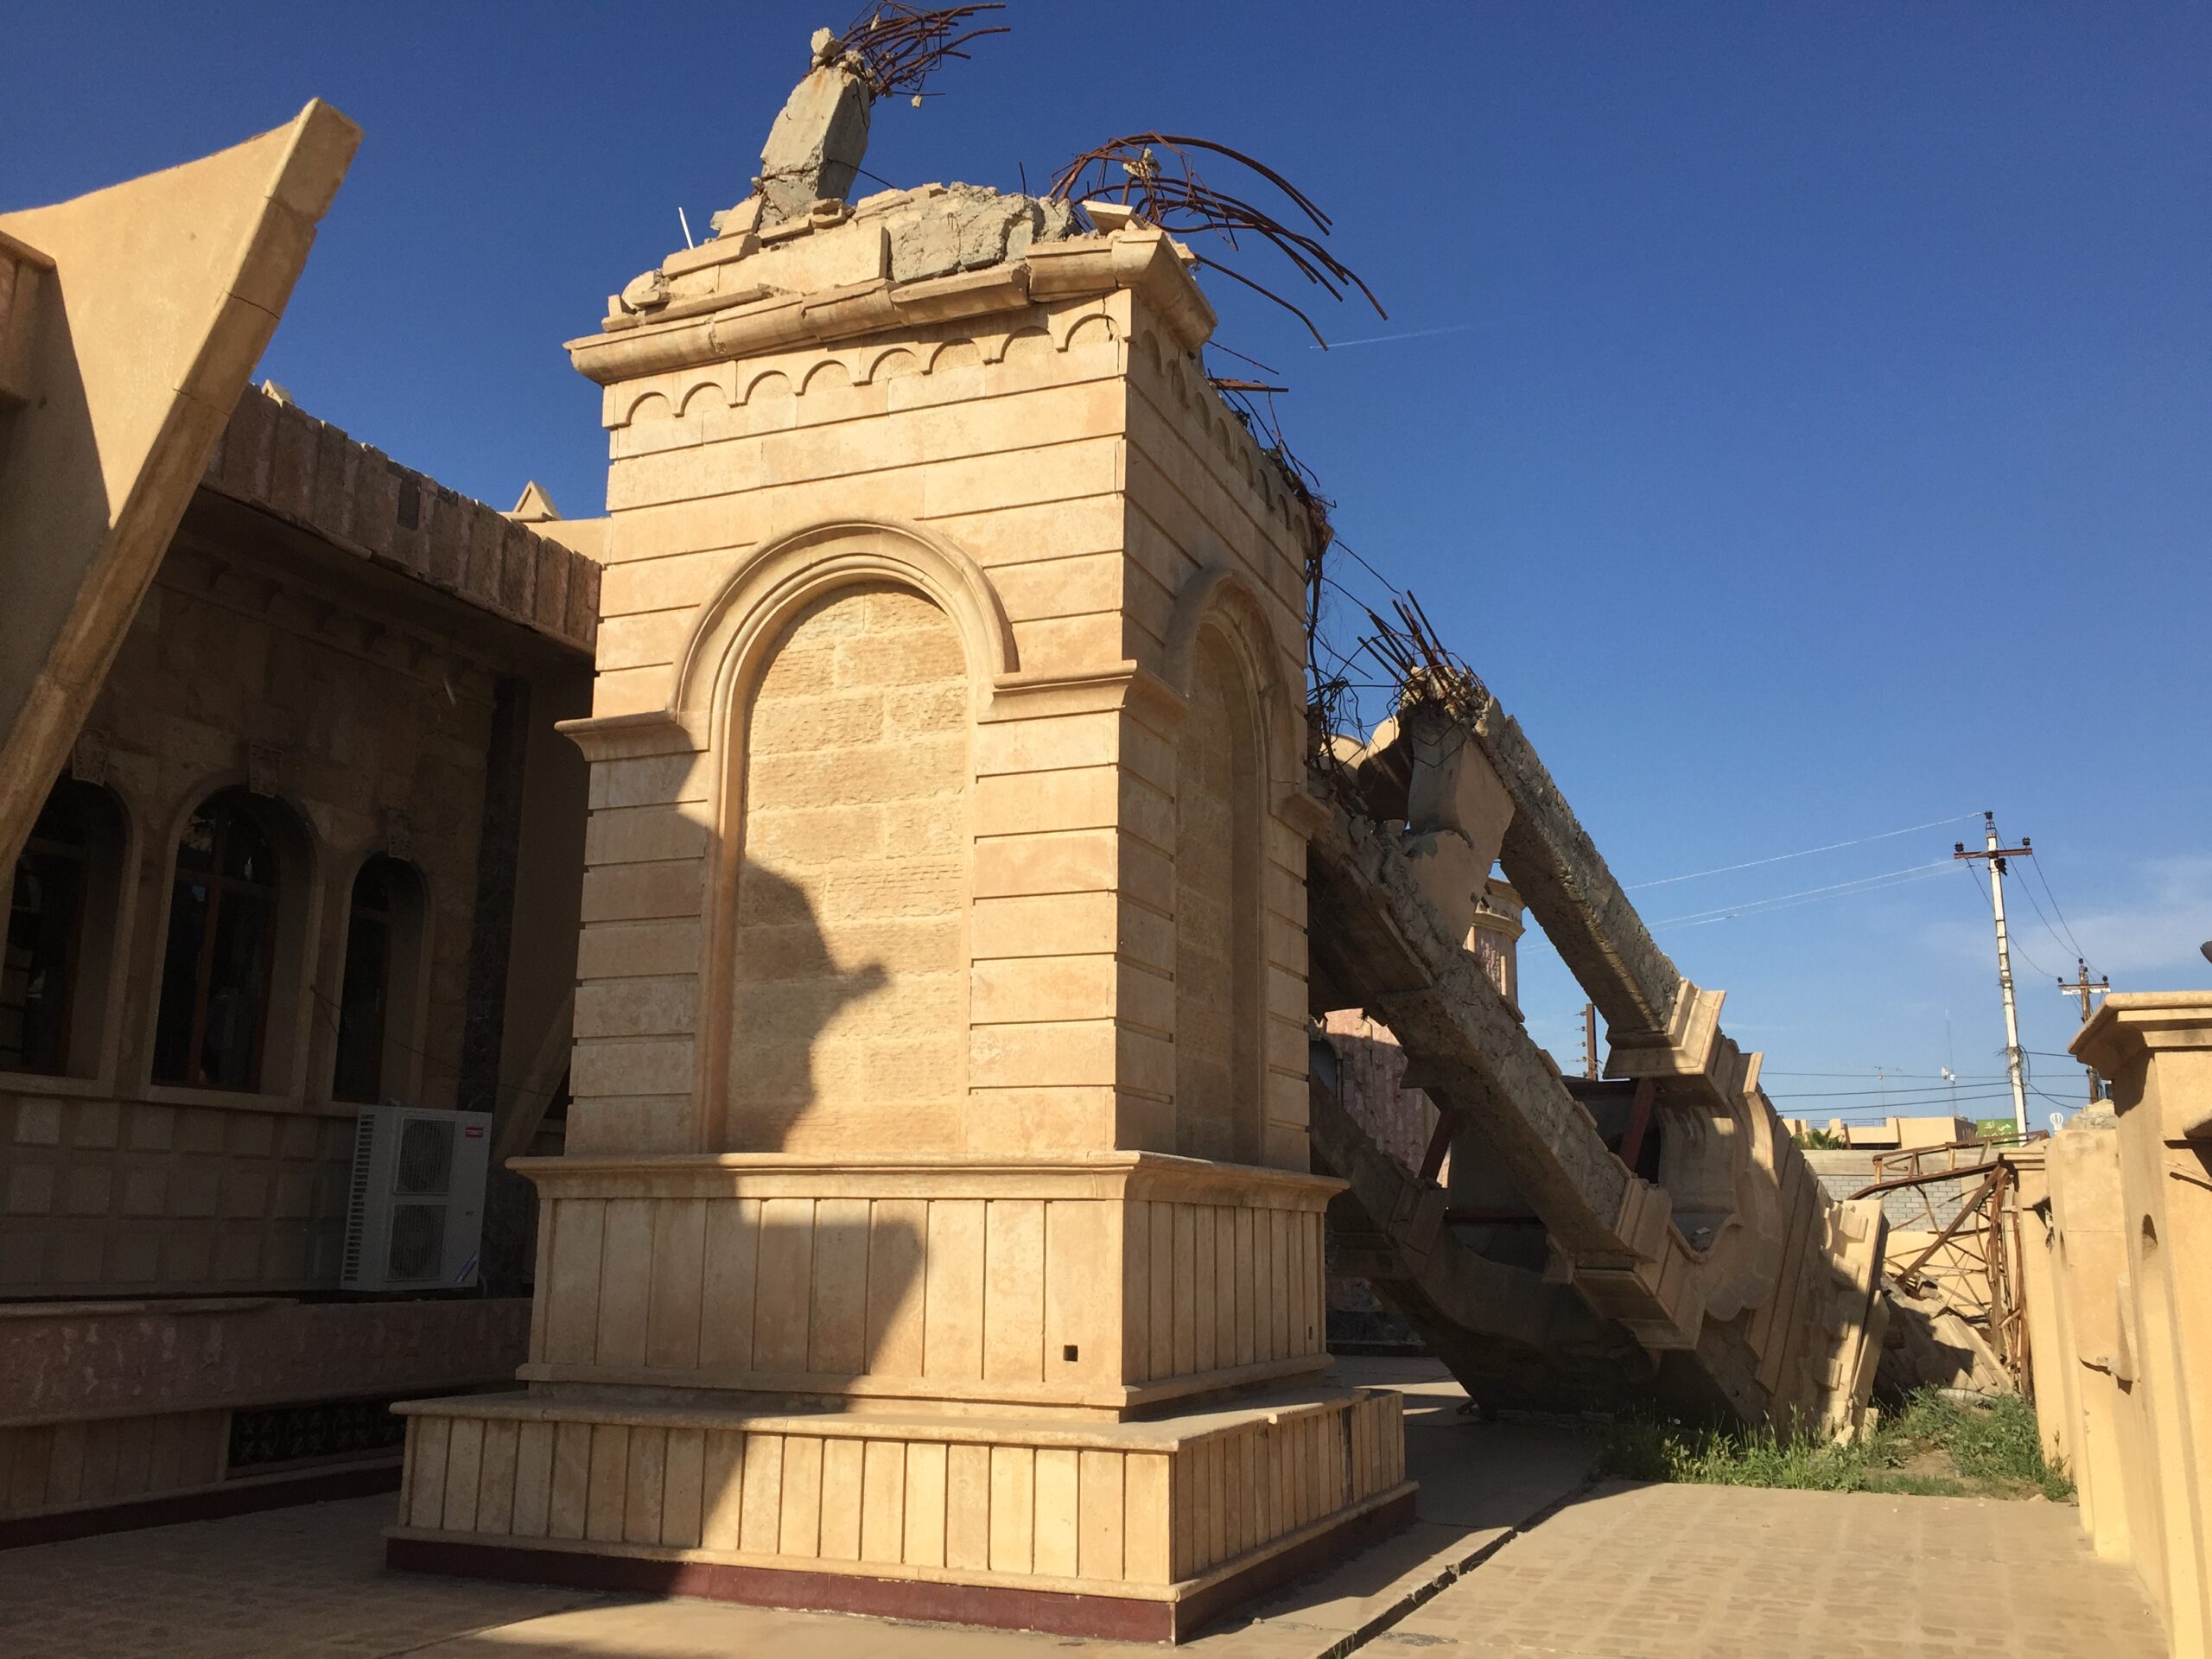 Toppled bell tower in Qaraqosh